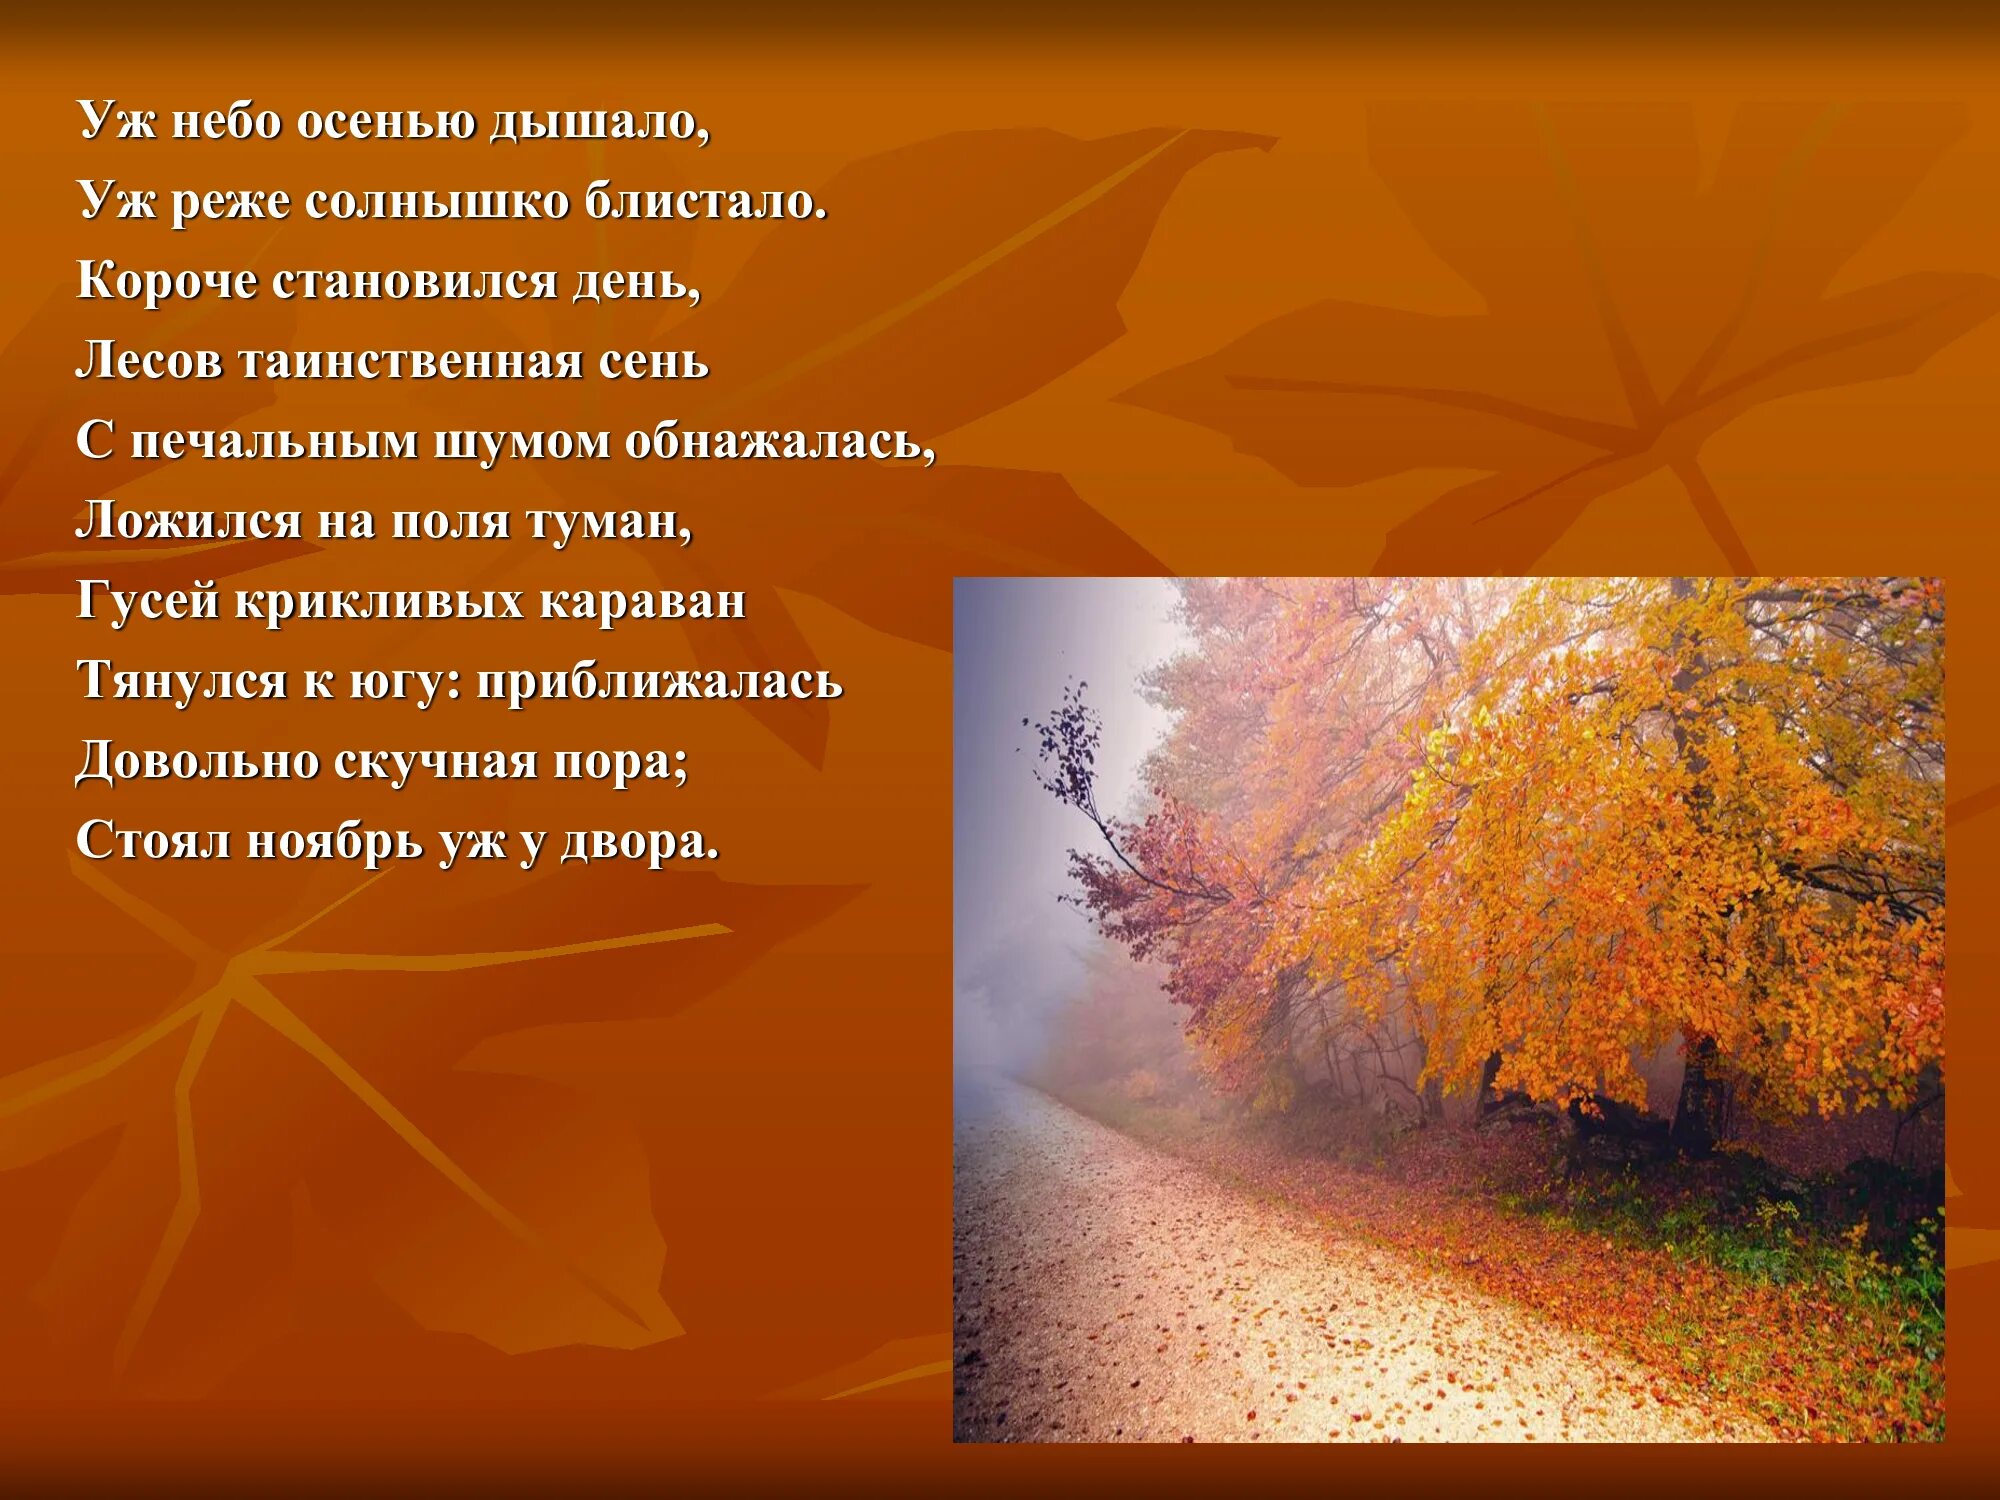 Уж небо осенью дышало. Осень глазами поэтов. Уж реже солнышко блистало. Уж небо осенью дышало стих.